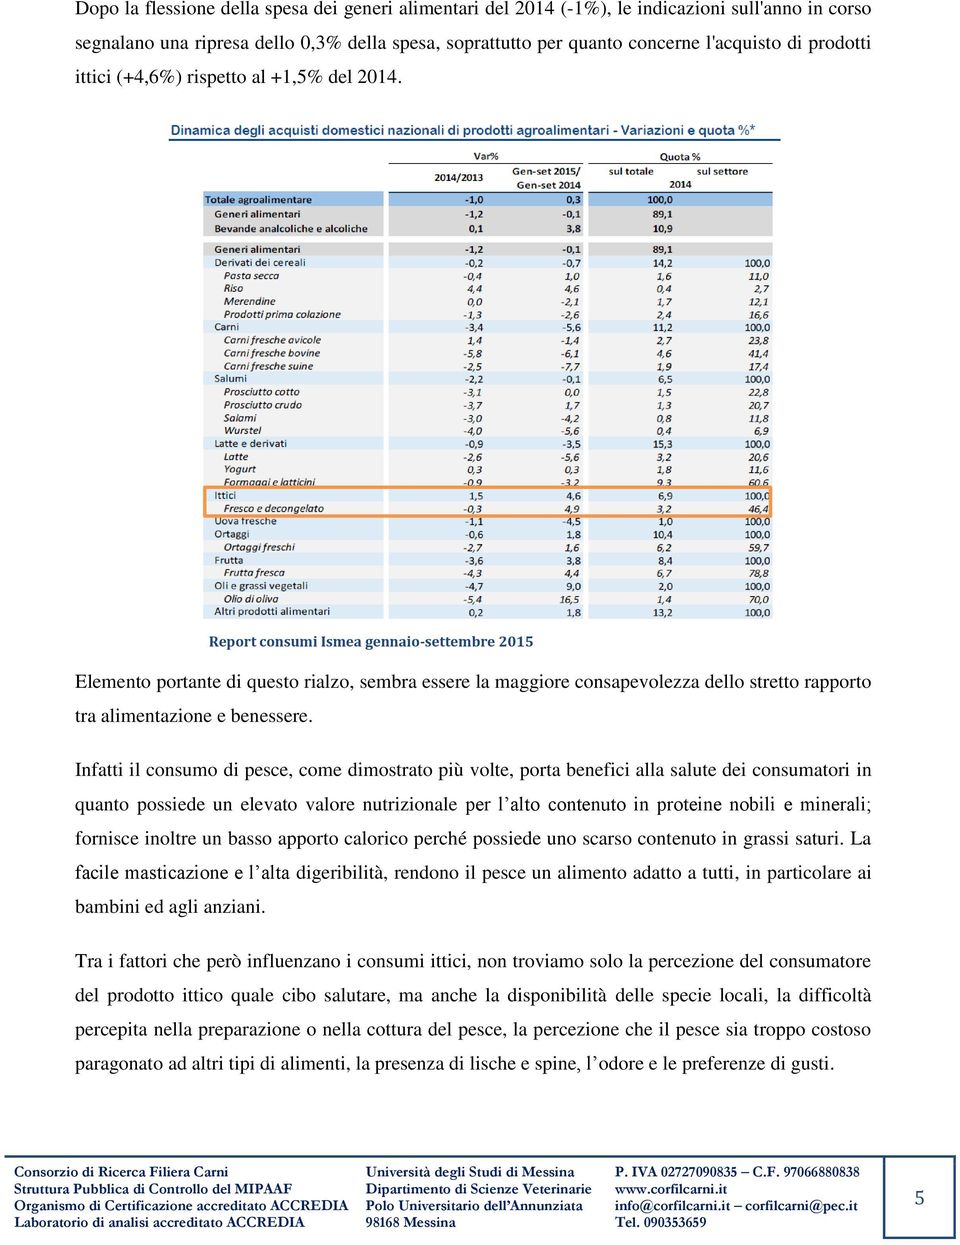 Report consumi Ismea gennaio-settembre 2015 Elemento portante di questo rialzo, sembra essere la maggiore consapevolezza dello stretto rapporto tra alimentazione e benessere.